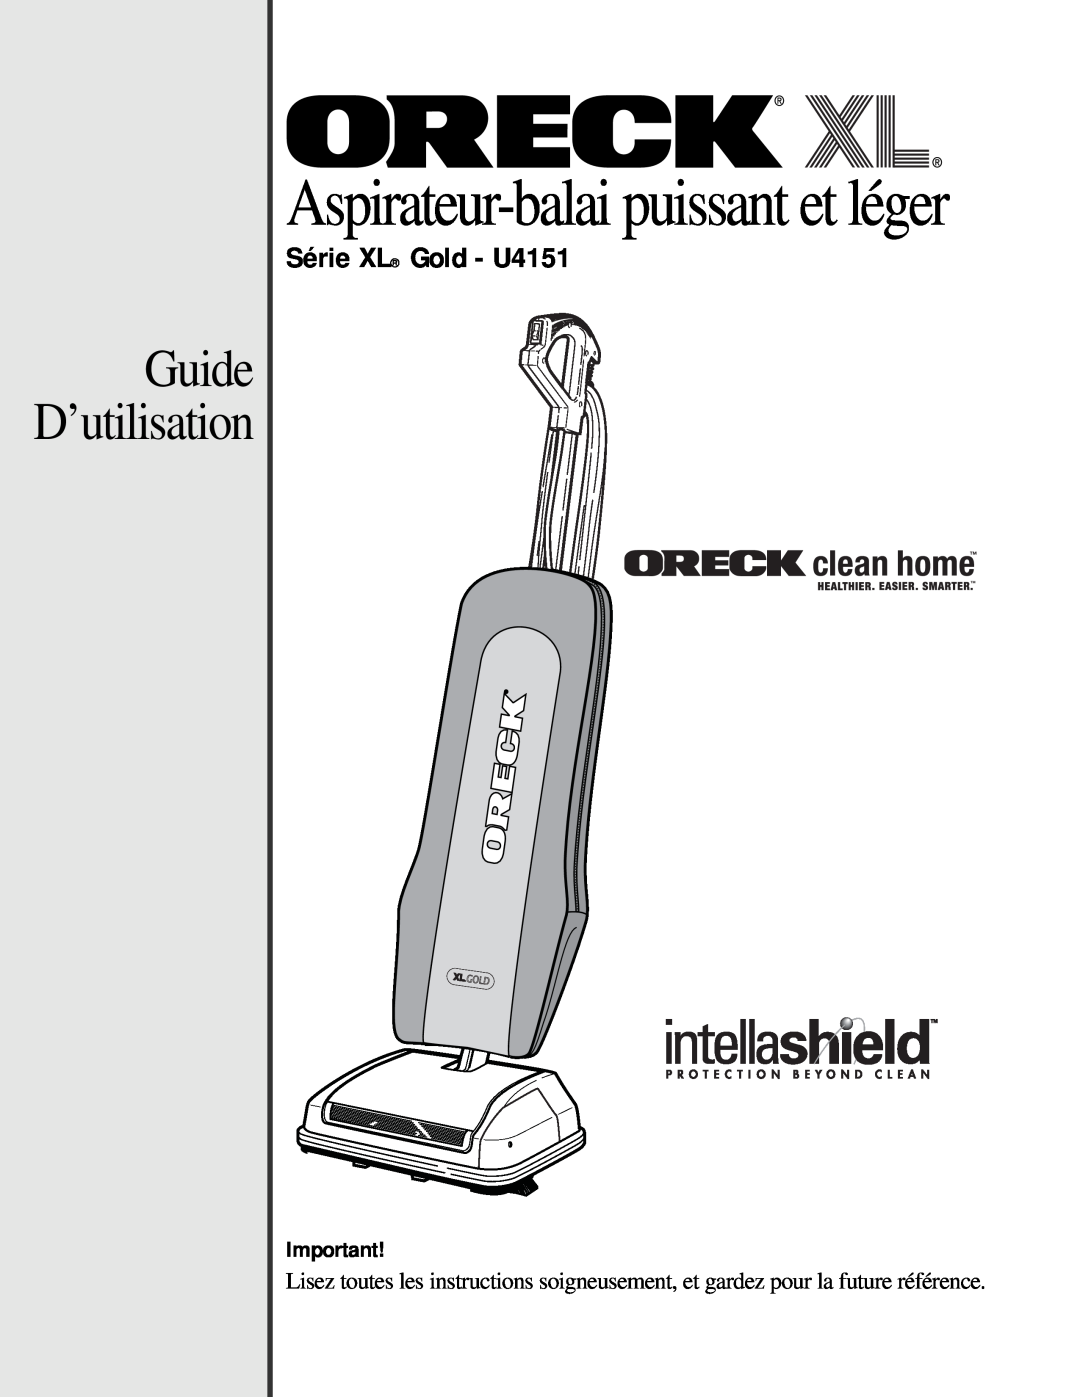 Oreck manual Guide D’utilisation, Série XL Gold - U4151, Aspirateur-balaipuissant et léger 